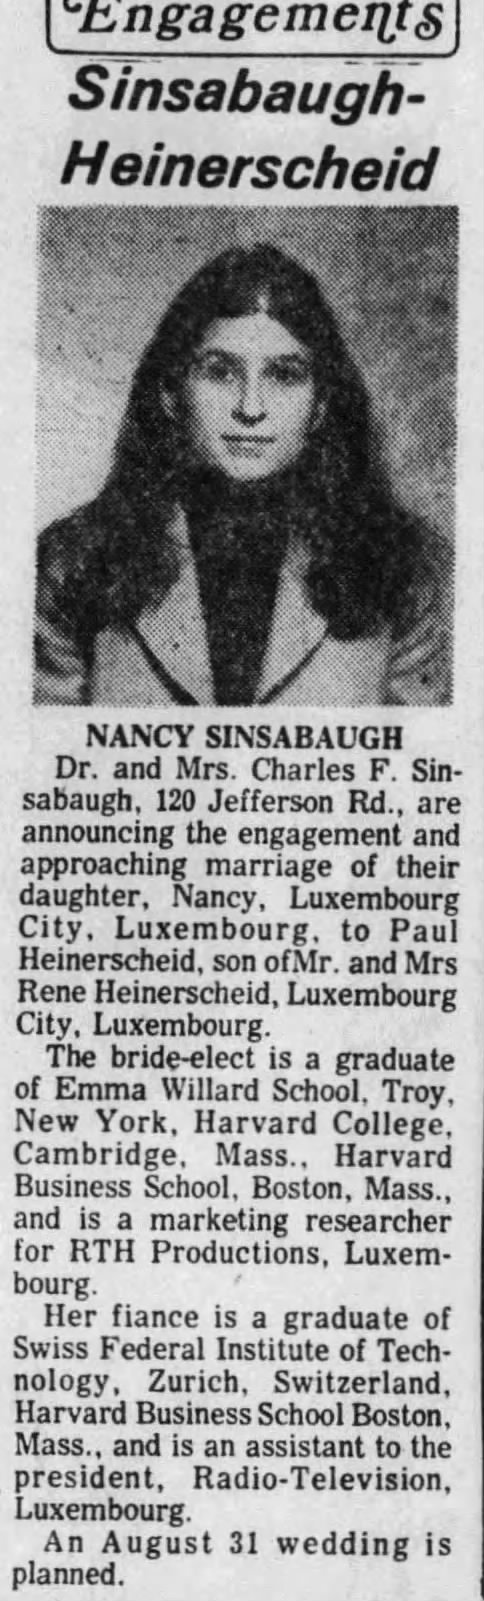 Marriage of SINSABAUGH / Heinerscheid